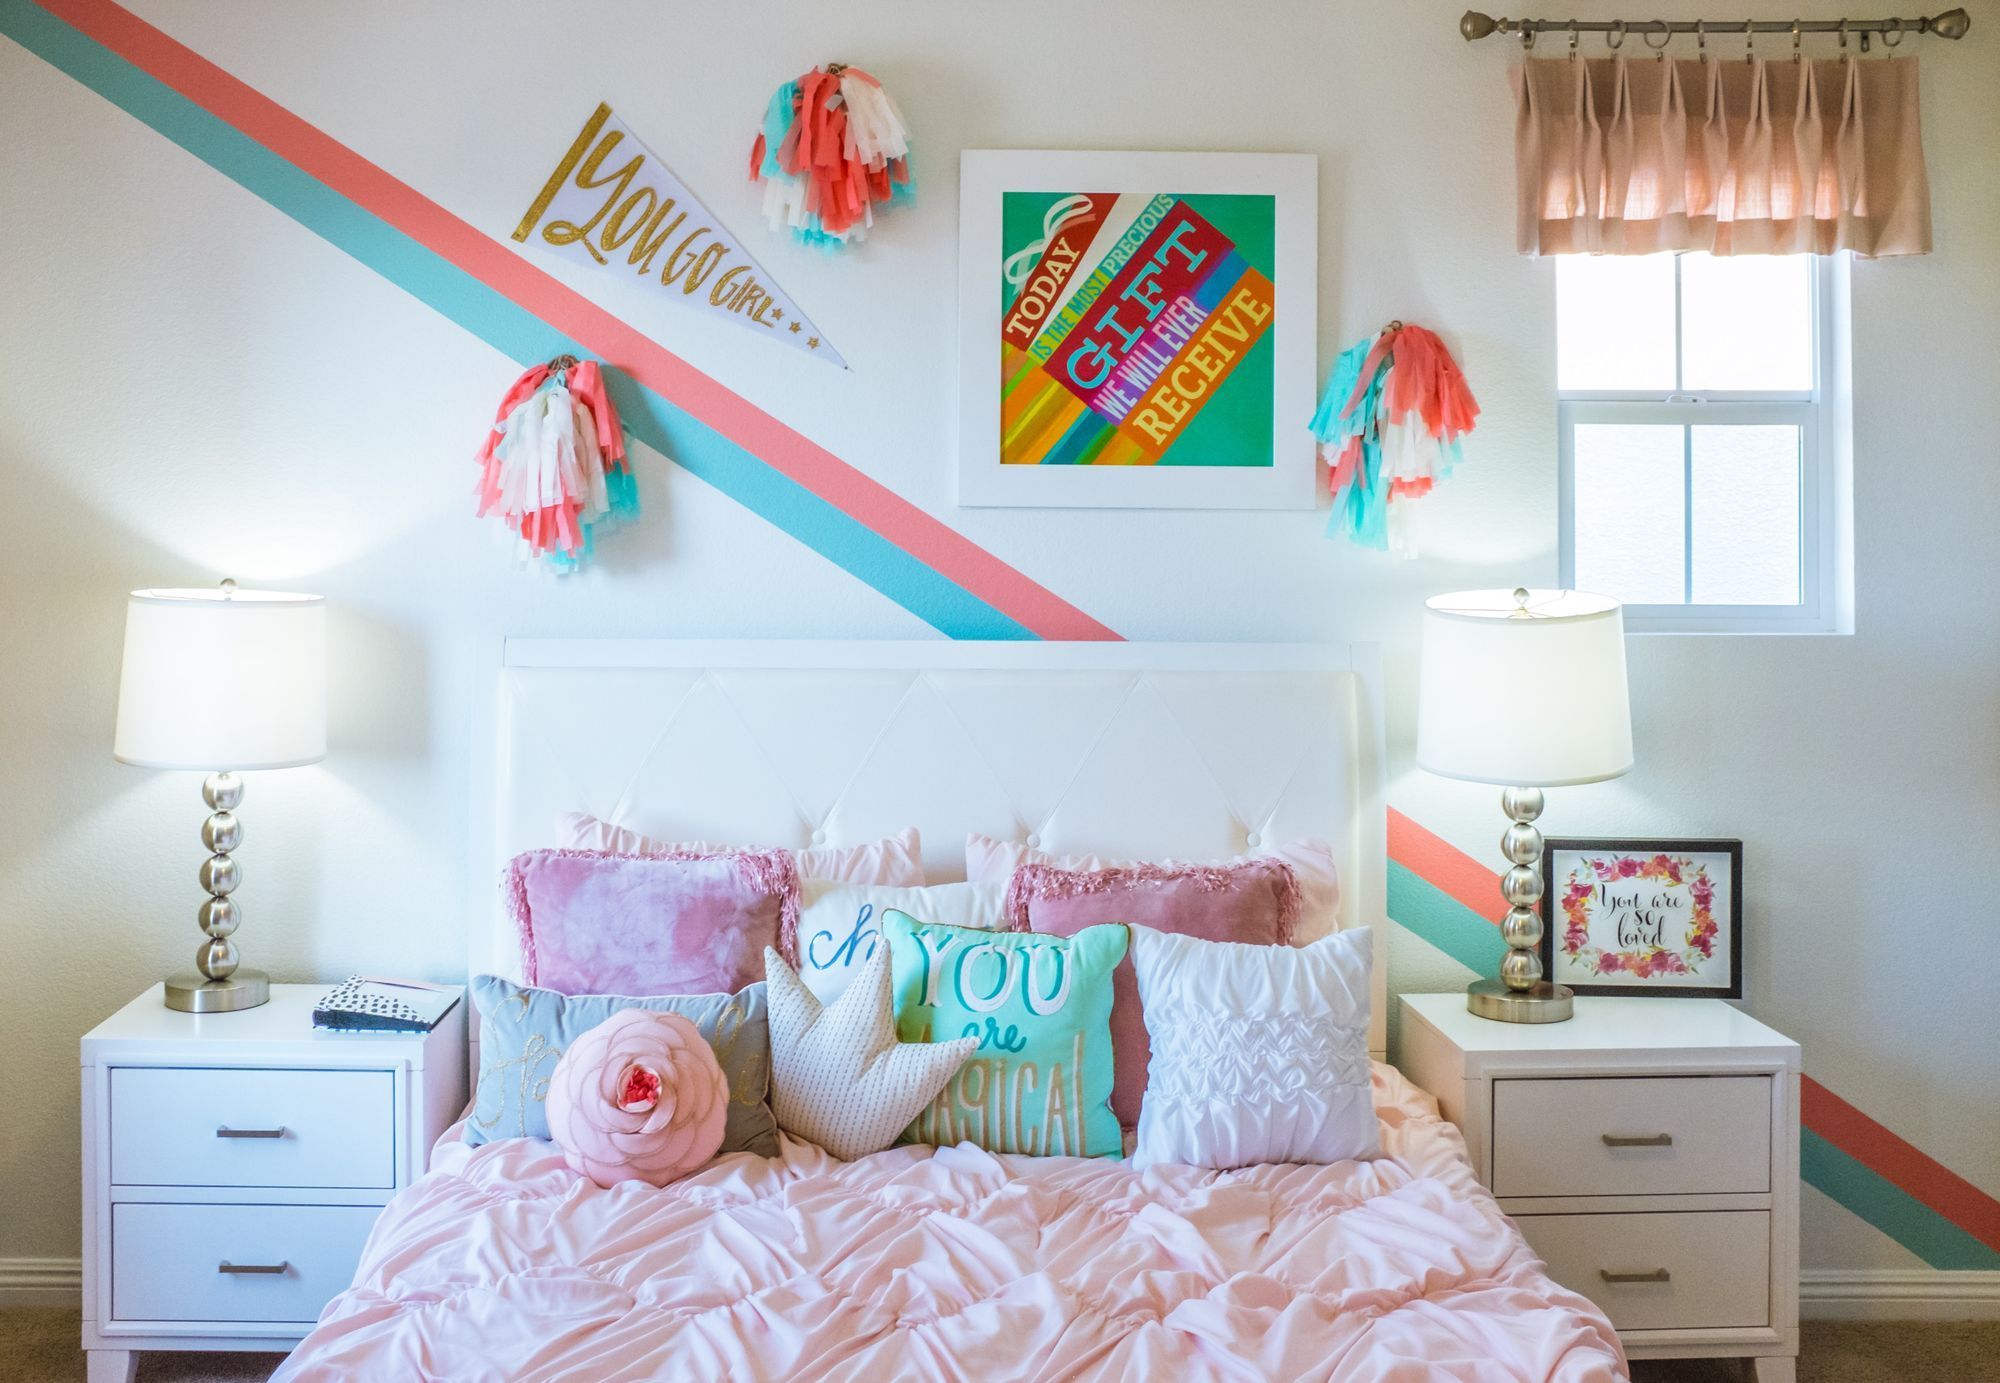 Come decorare la tua stanza: idee per ogni personalità